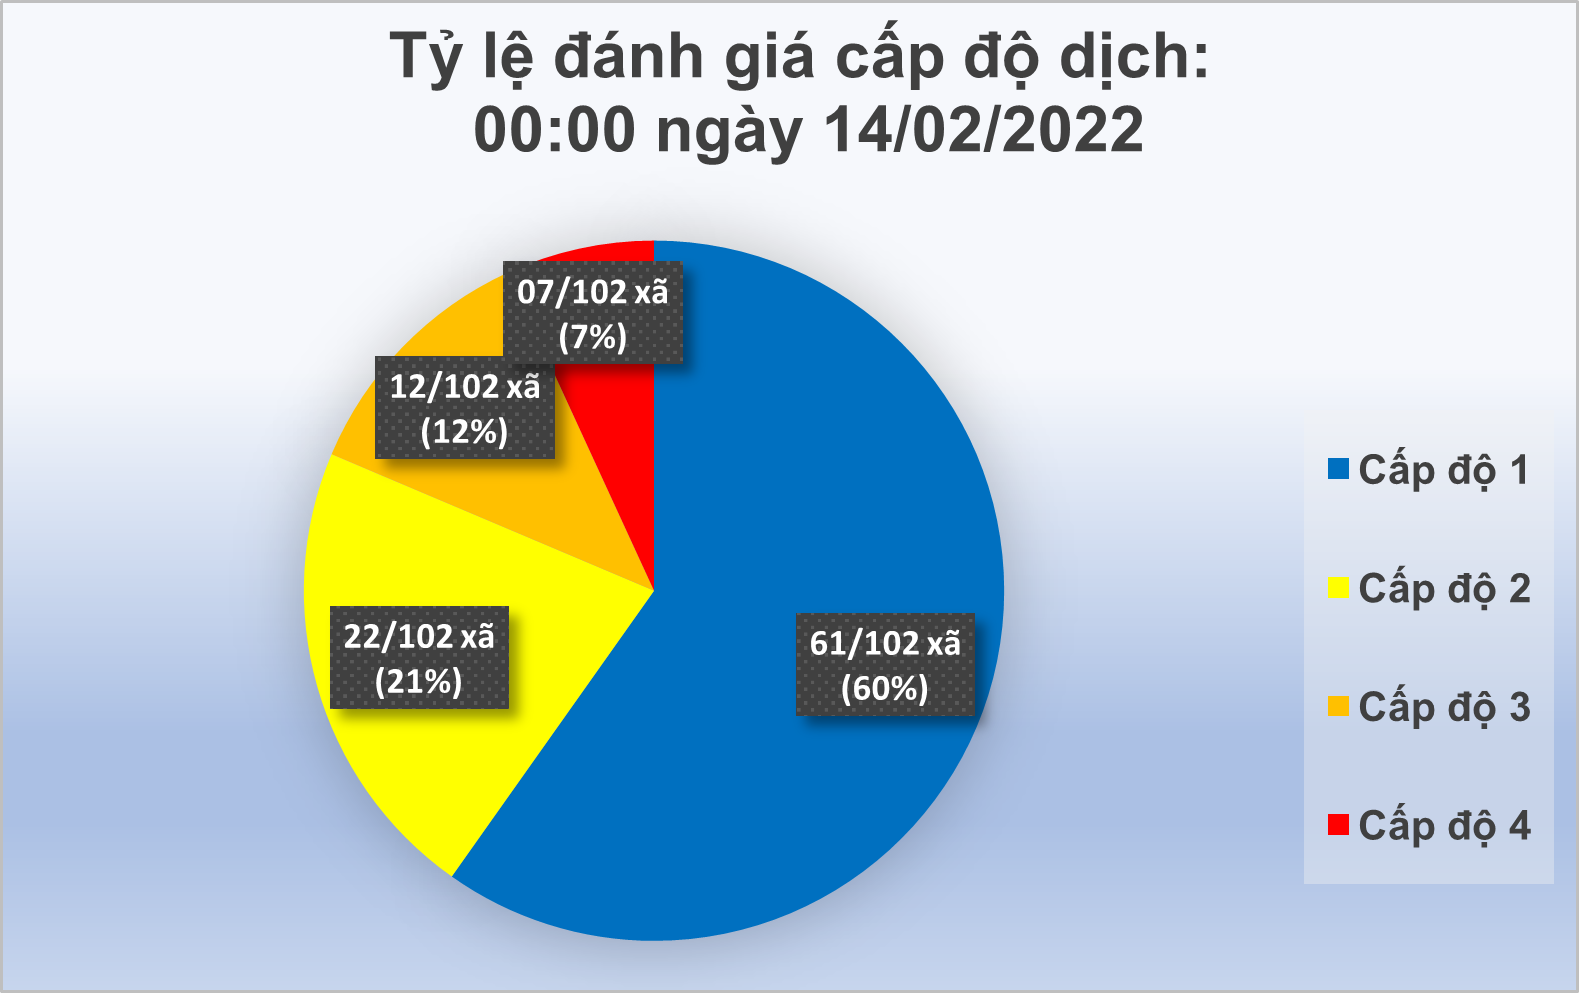 Cấp độ dịch COVID-19 trên địa bàn tỉnh đến ngày 14/02/2022